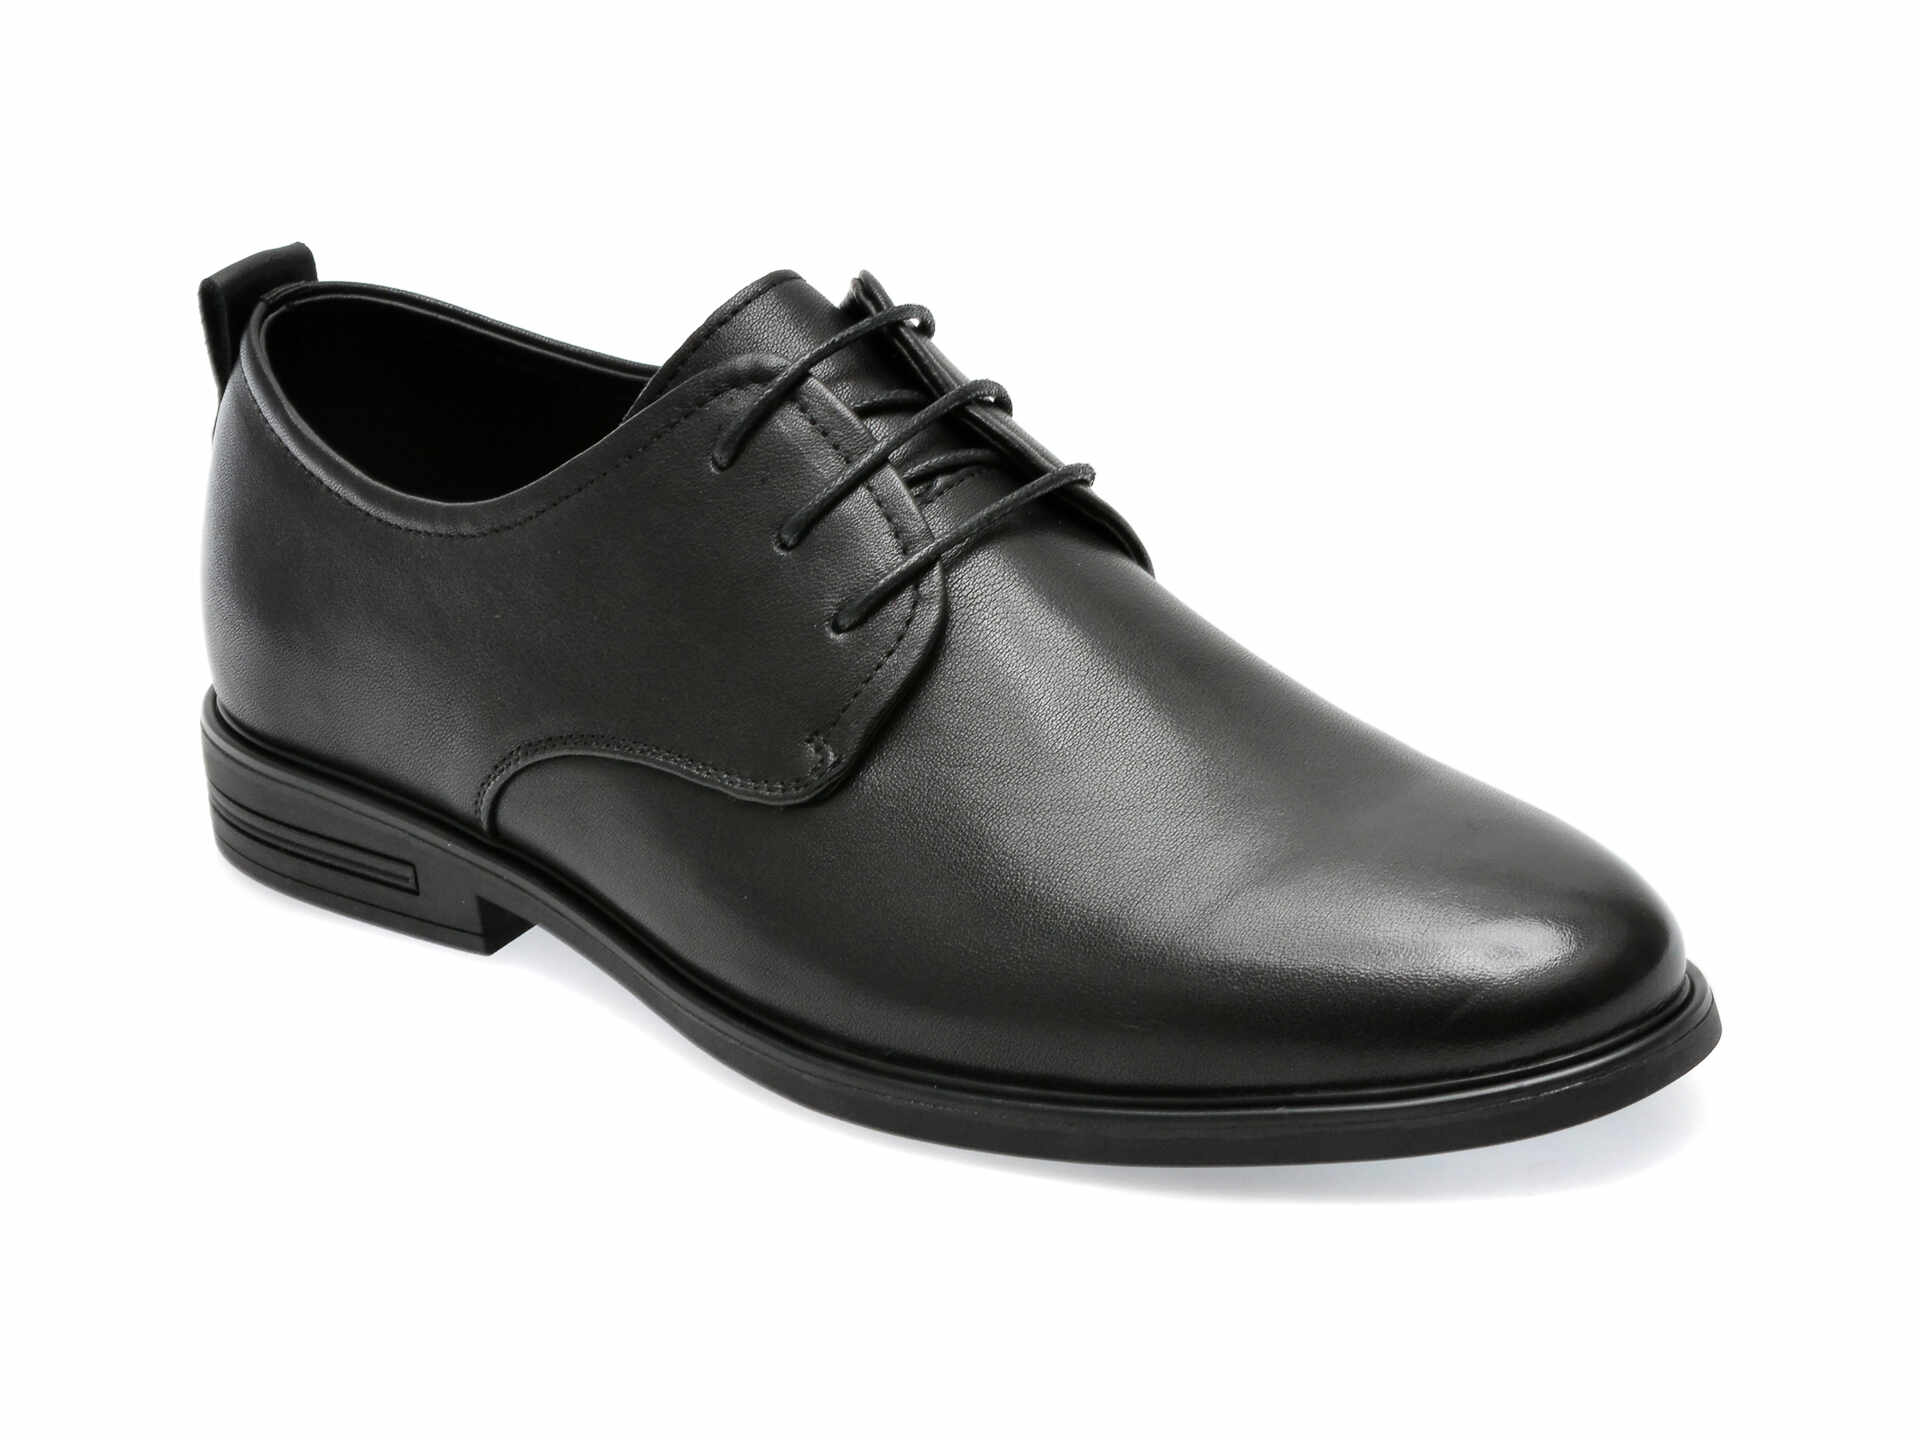 Pantofi OTTER negri, Y99391B, din piele naturala